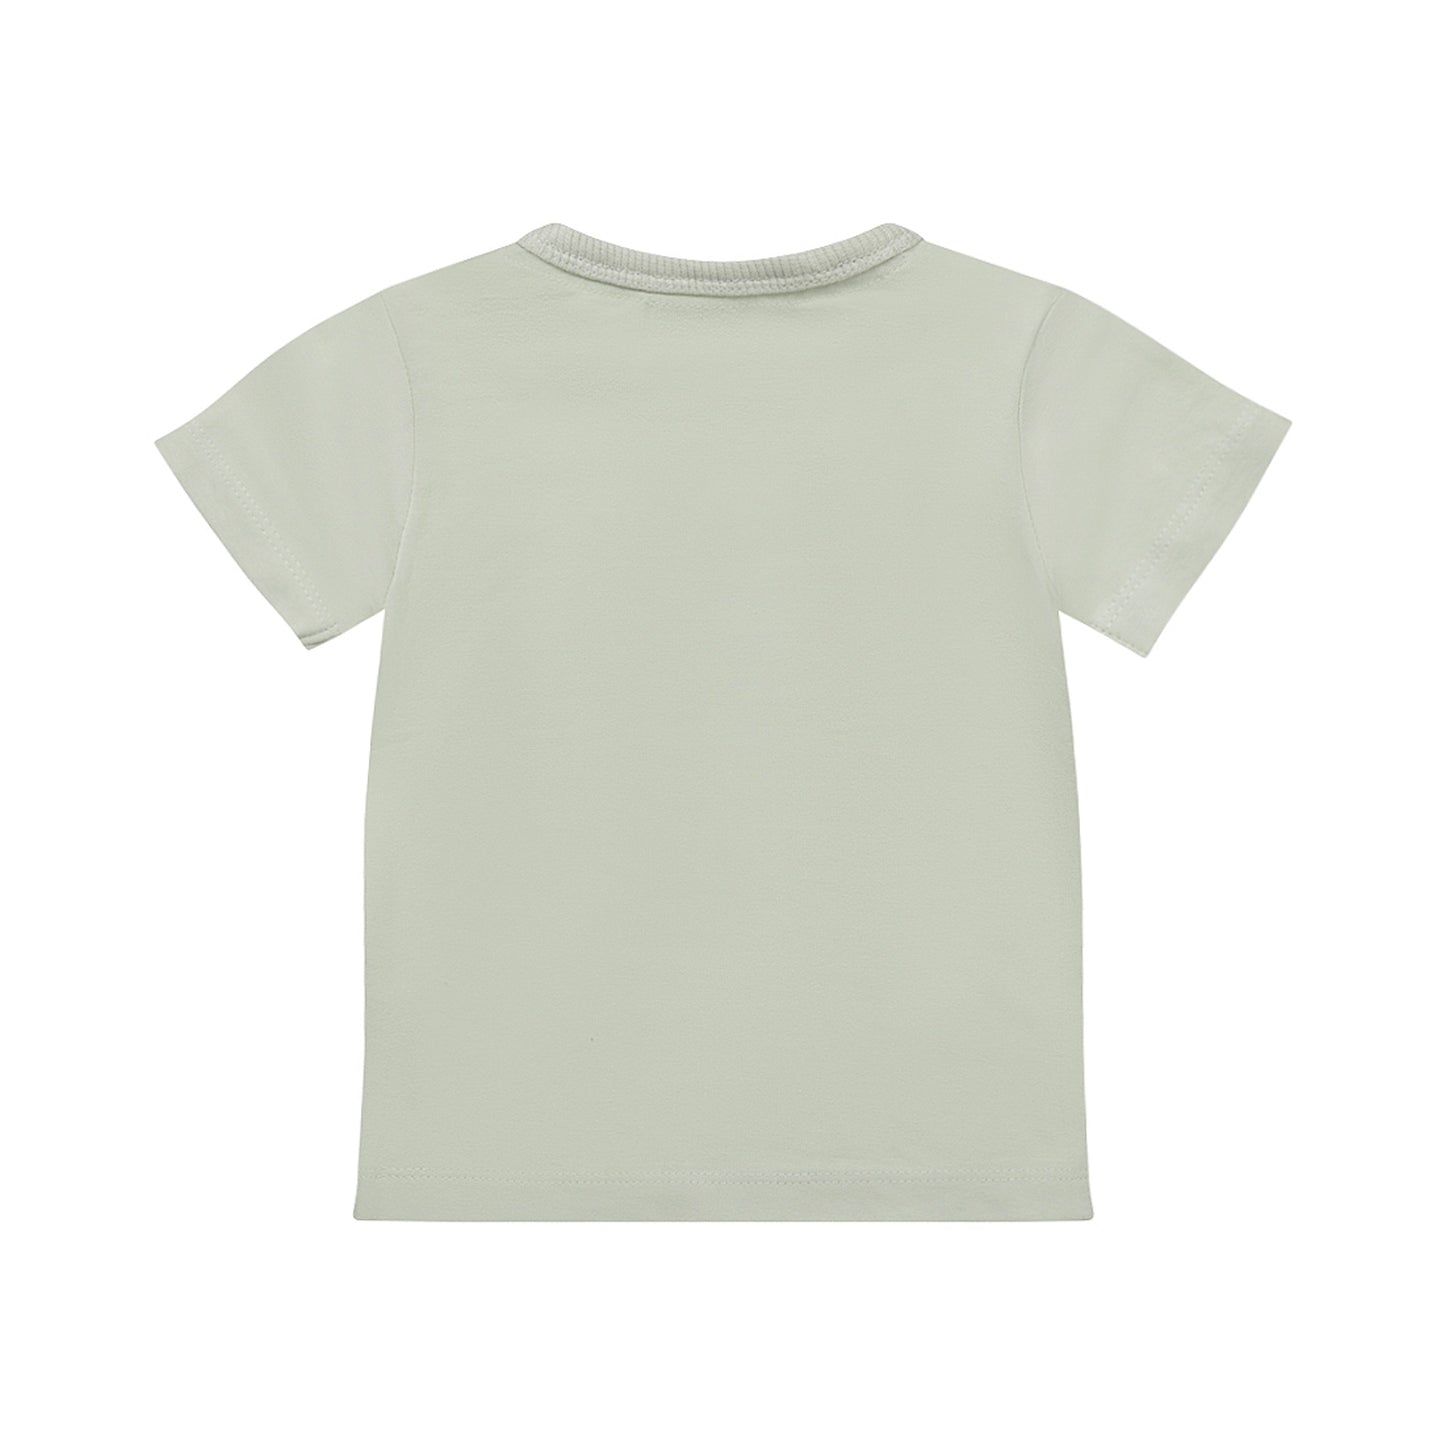 T-shirt ss (Light green)